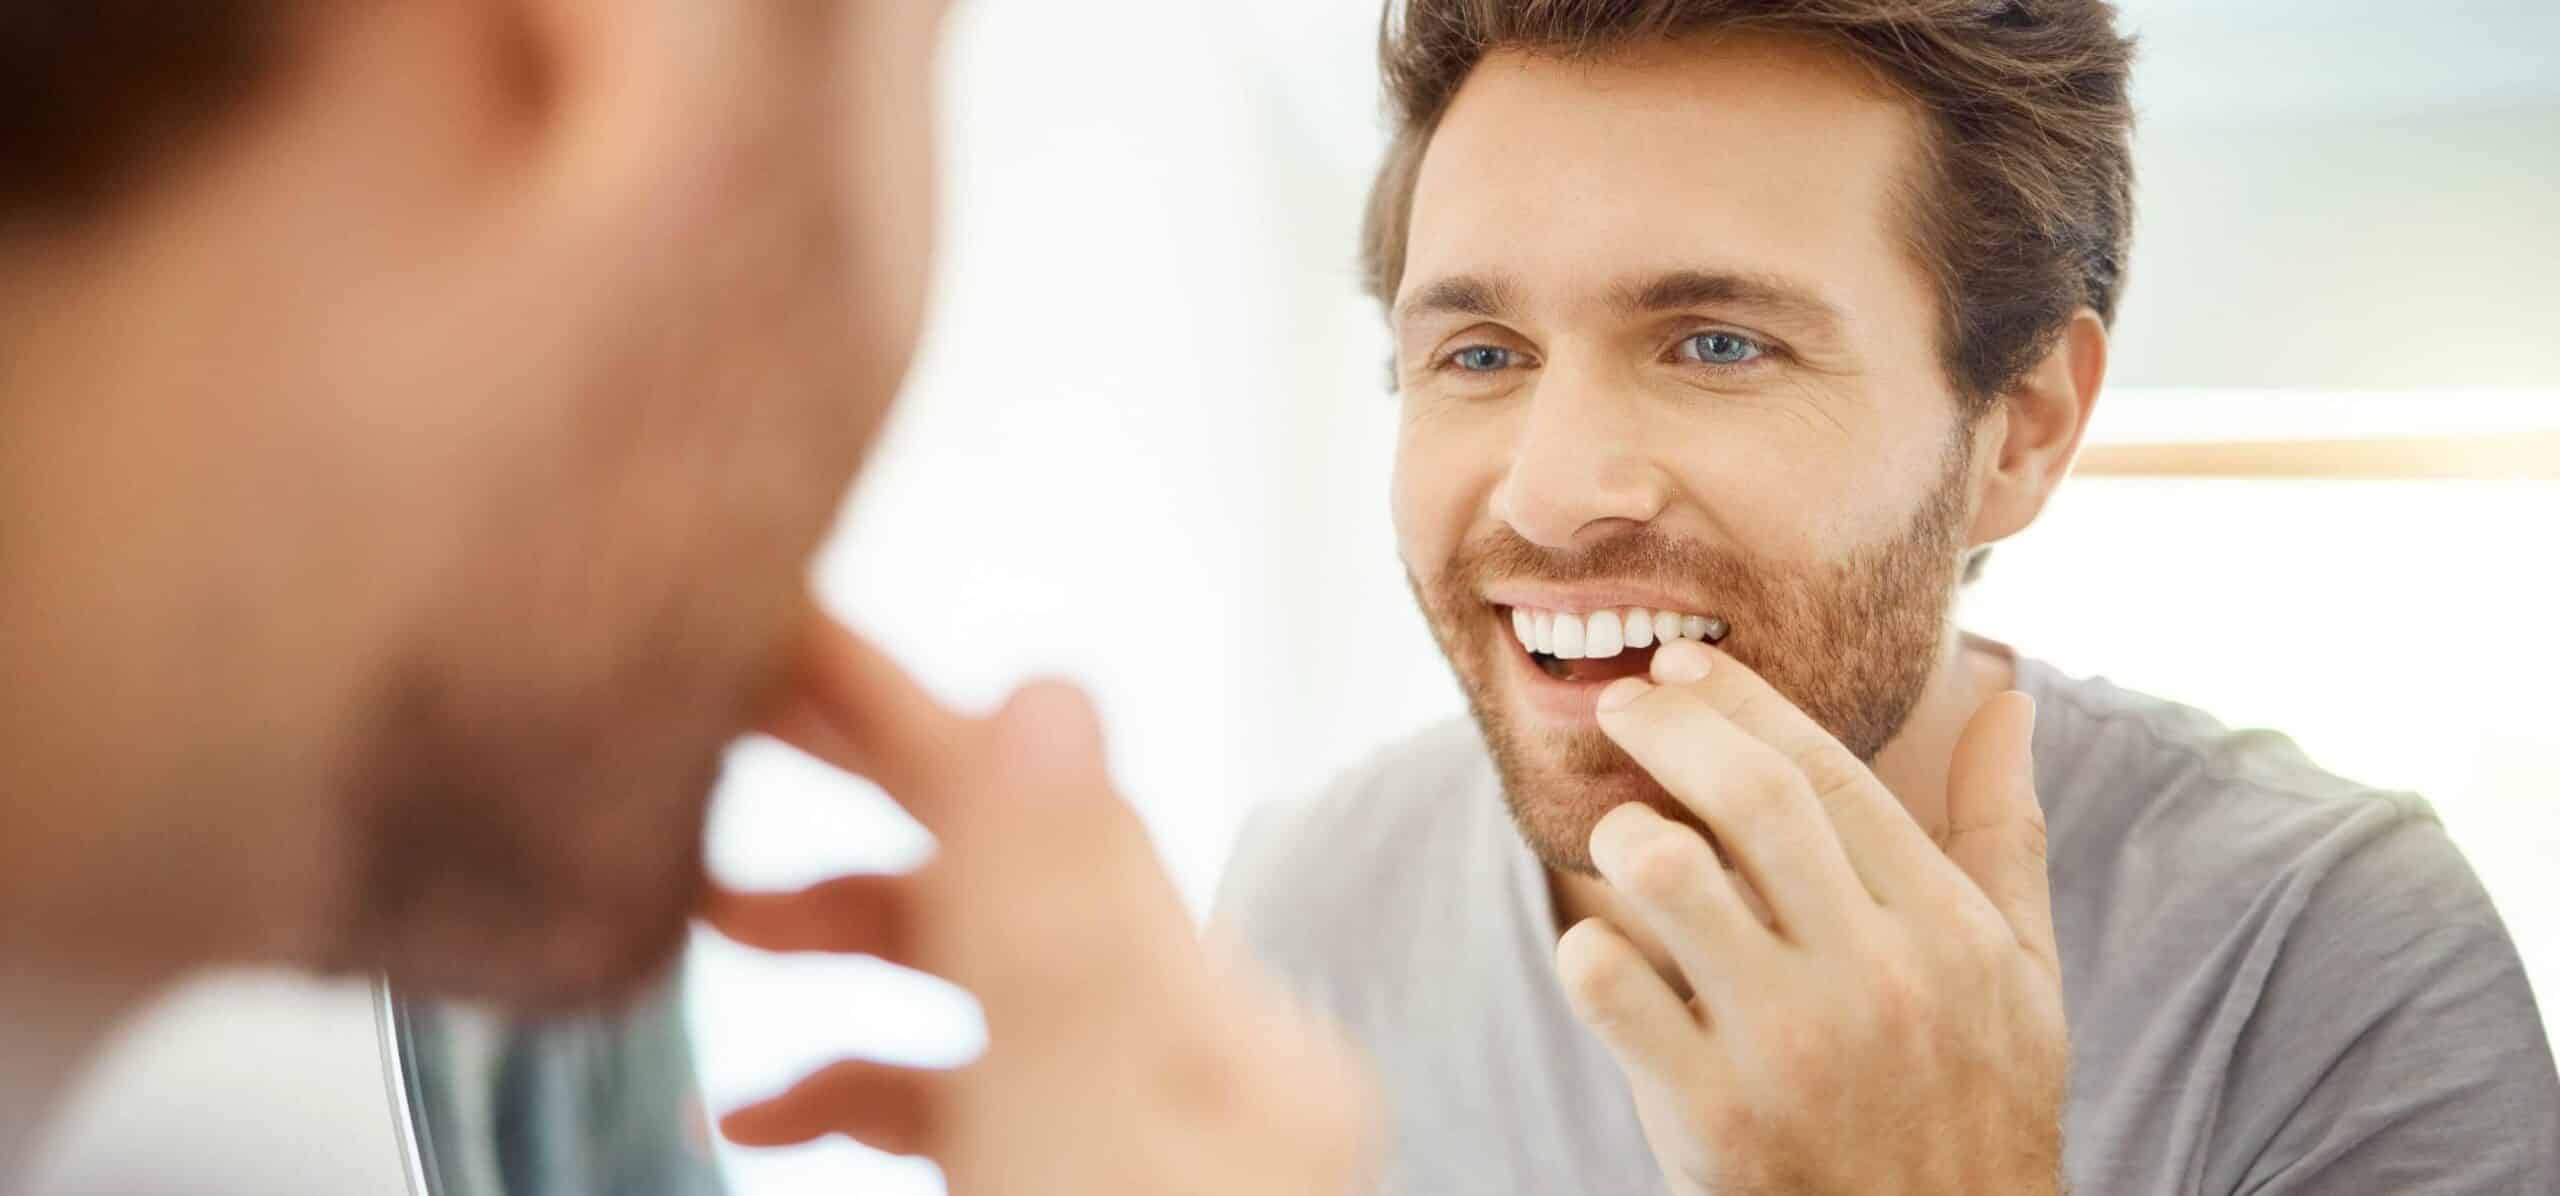 Mes dents ont bougées après un traitement orthodontique : que faire ? | Dr Temstet | Paris